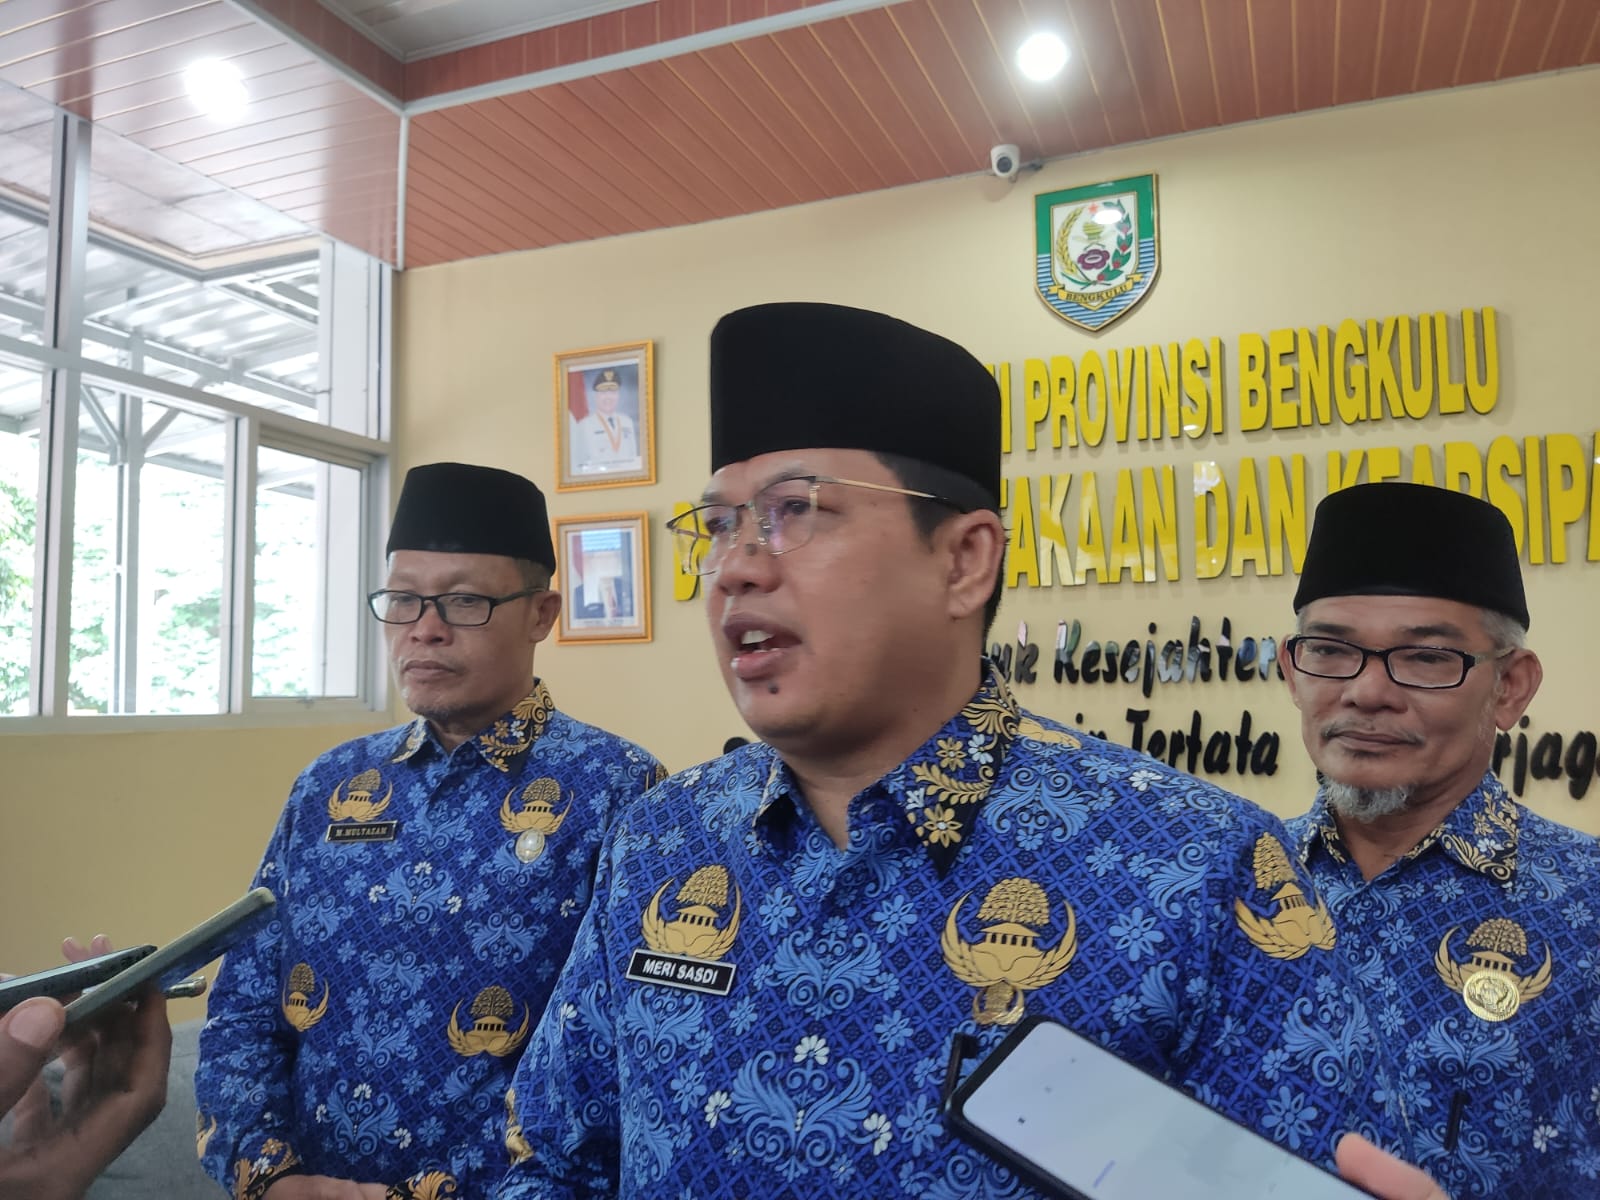 Masa Kepemimpinan Meri Sasdi, DPK Provinsi Bengkulu Terus Menuju Perubahan Lebih Baik